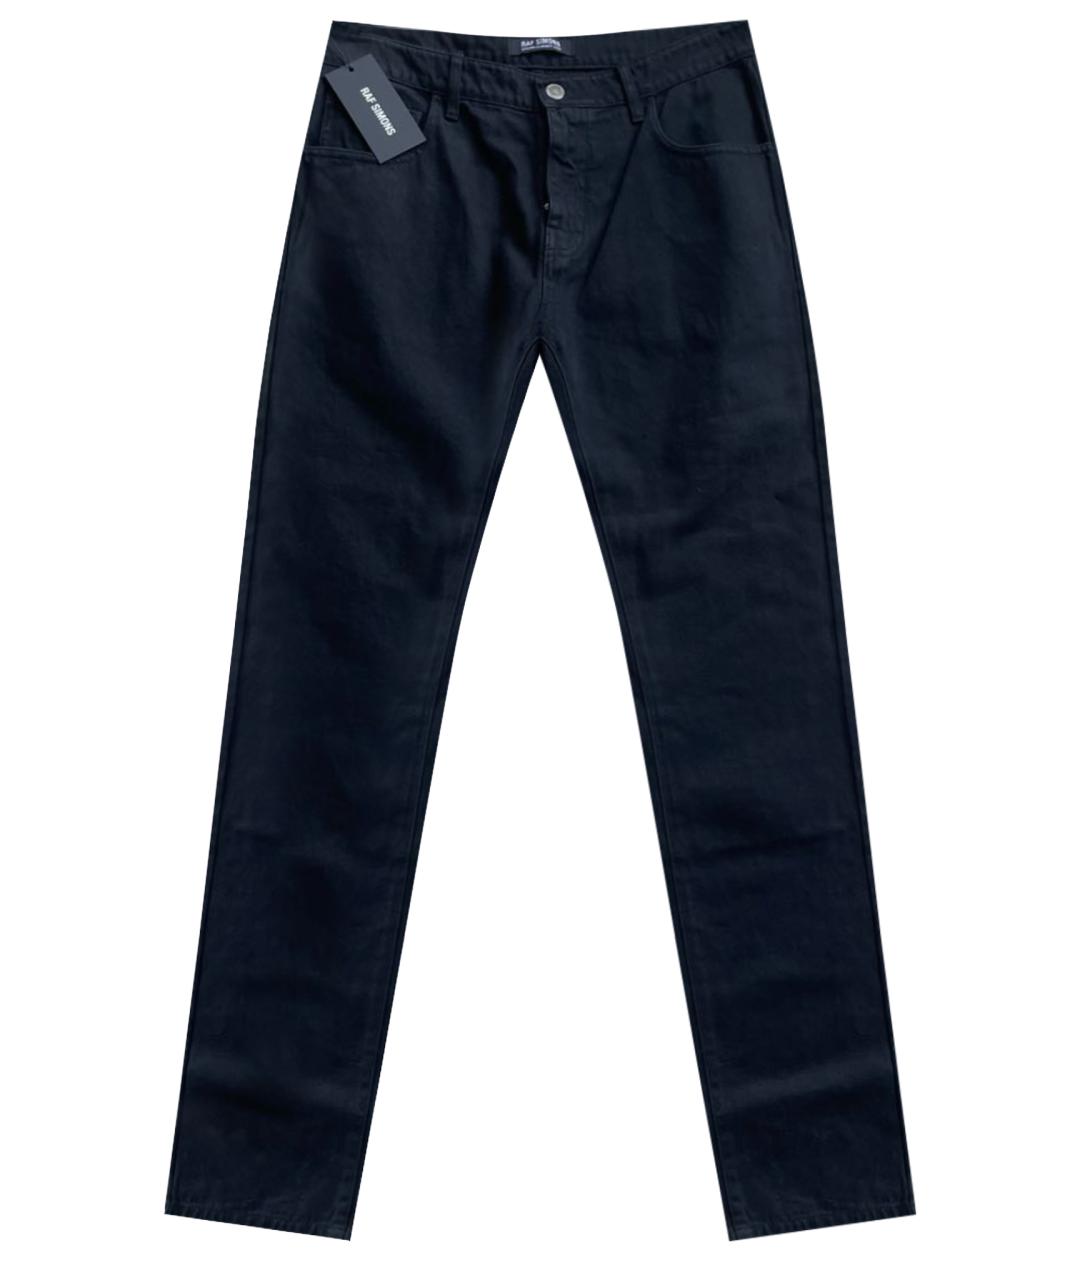 RAF SIMONS Черные хлопковые прямые джинсы, фото 1